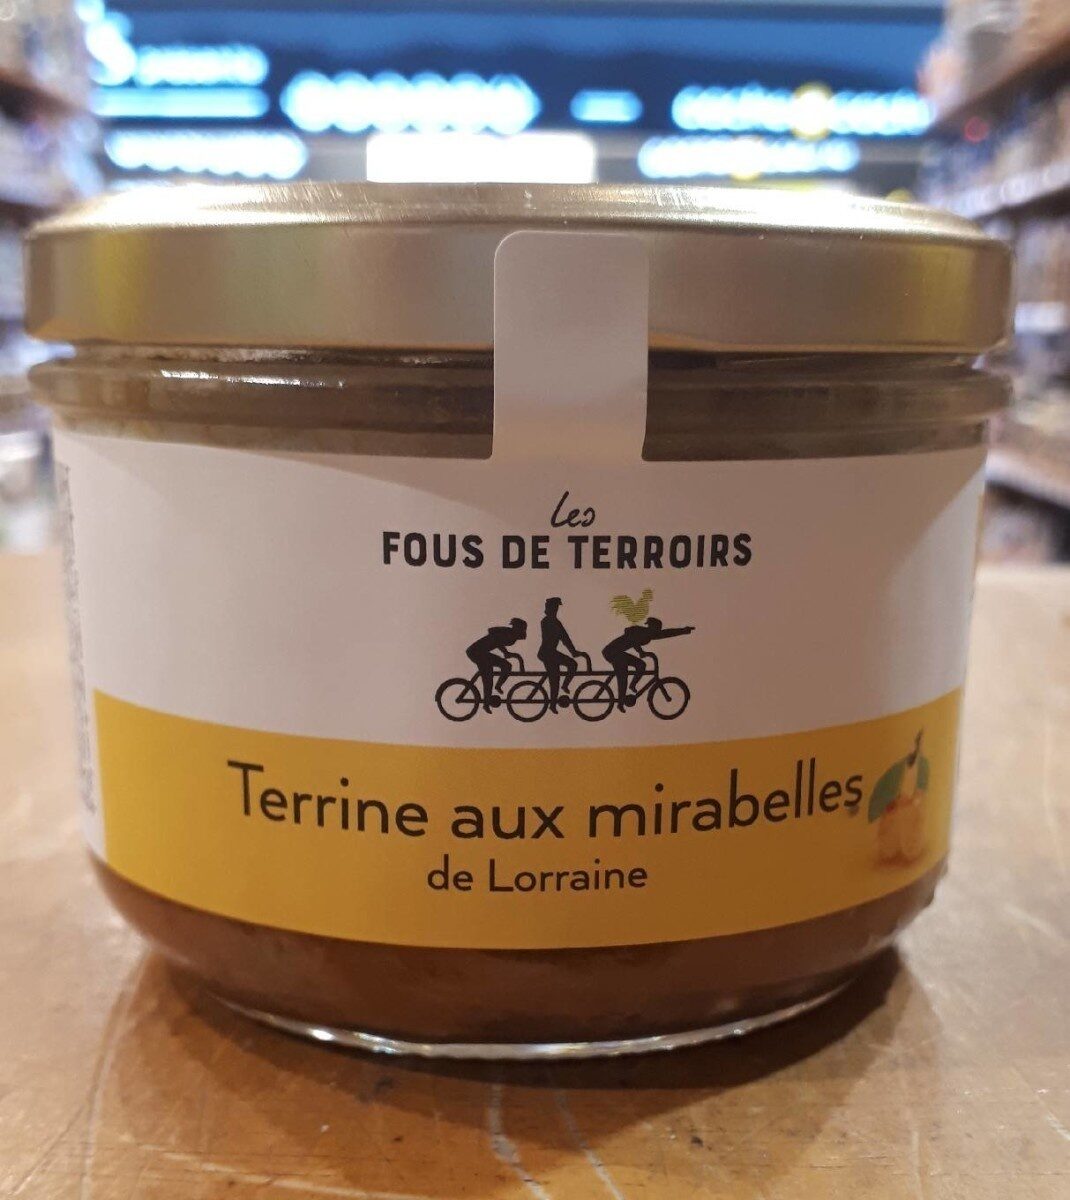 Terrine aux mirabelles de Lorraine - Product - fr